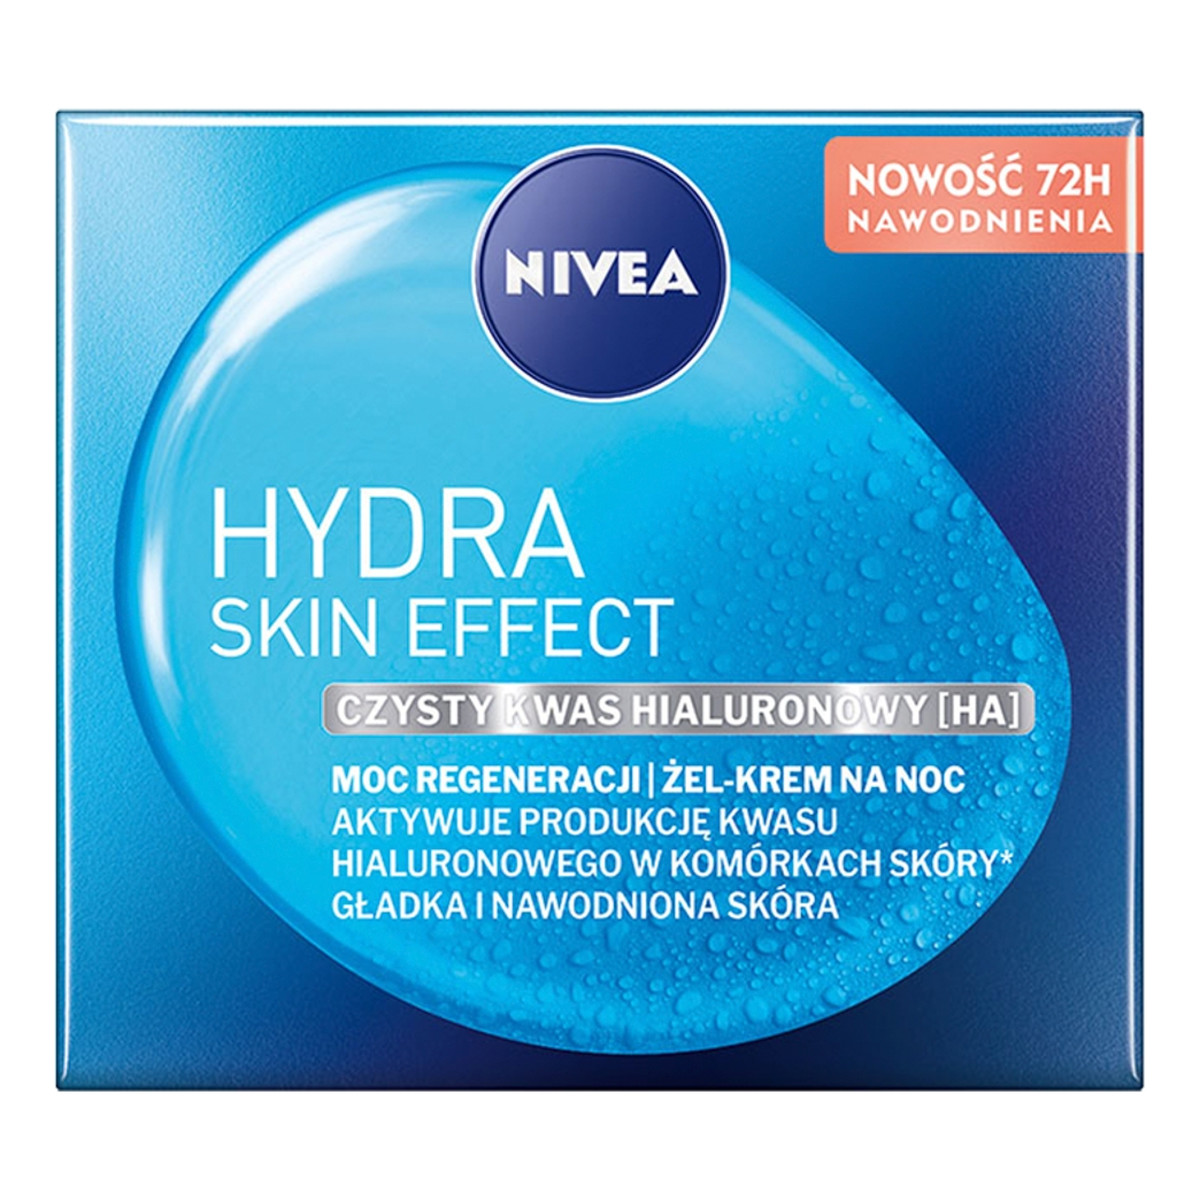 Nivea Hydra Skin Effect Żel-krem na noc moc regeneracji 50ml